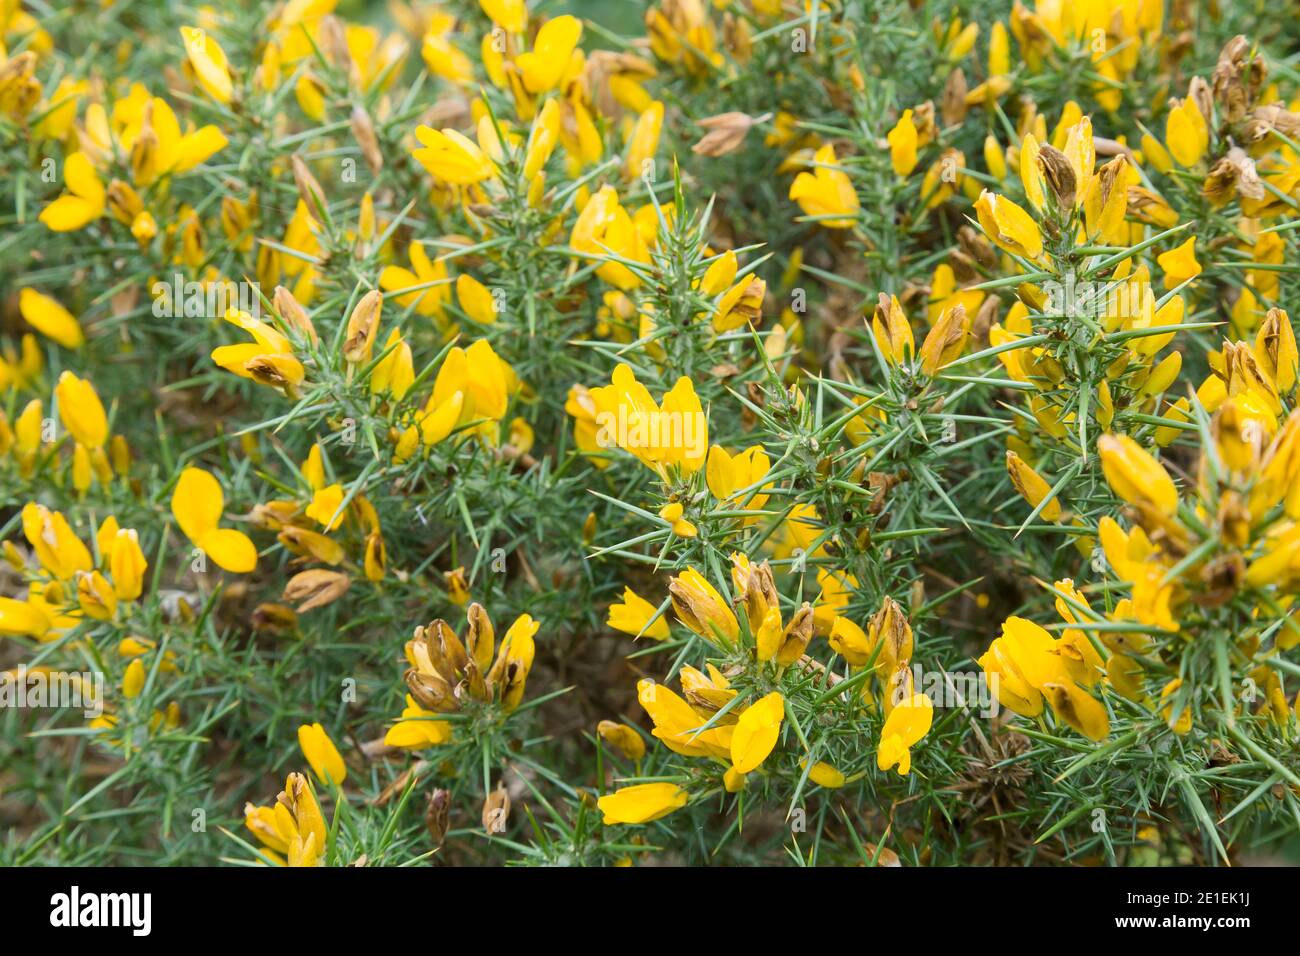 Buisson de gorge commune (ulex) à proximité avec des fleurs jaunes. Également connu sous le nom de furze ou whin, Royaume-Uni Banque D'Images